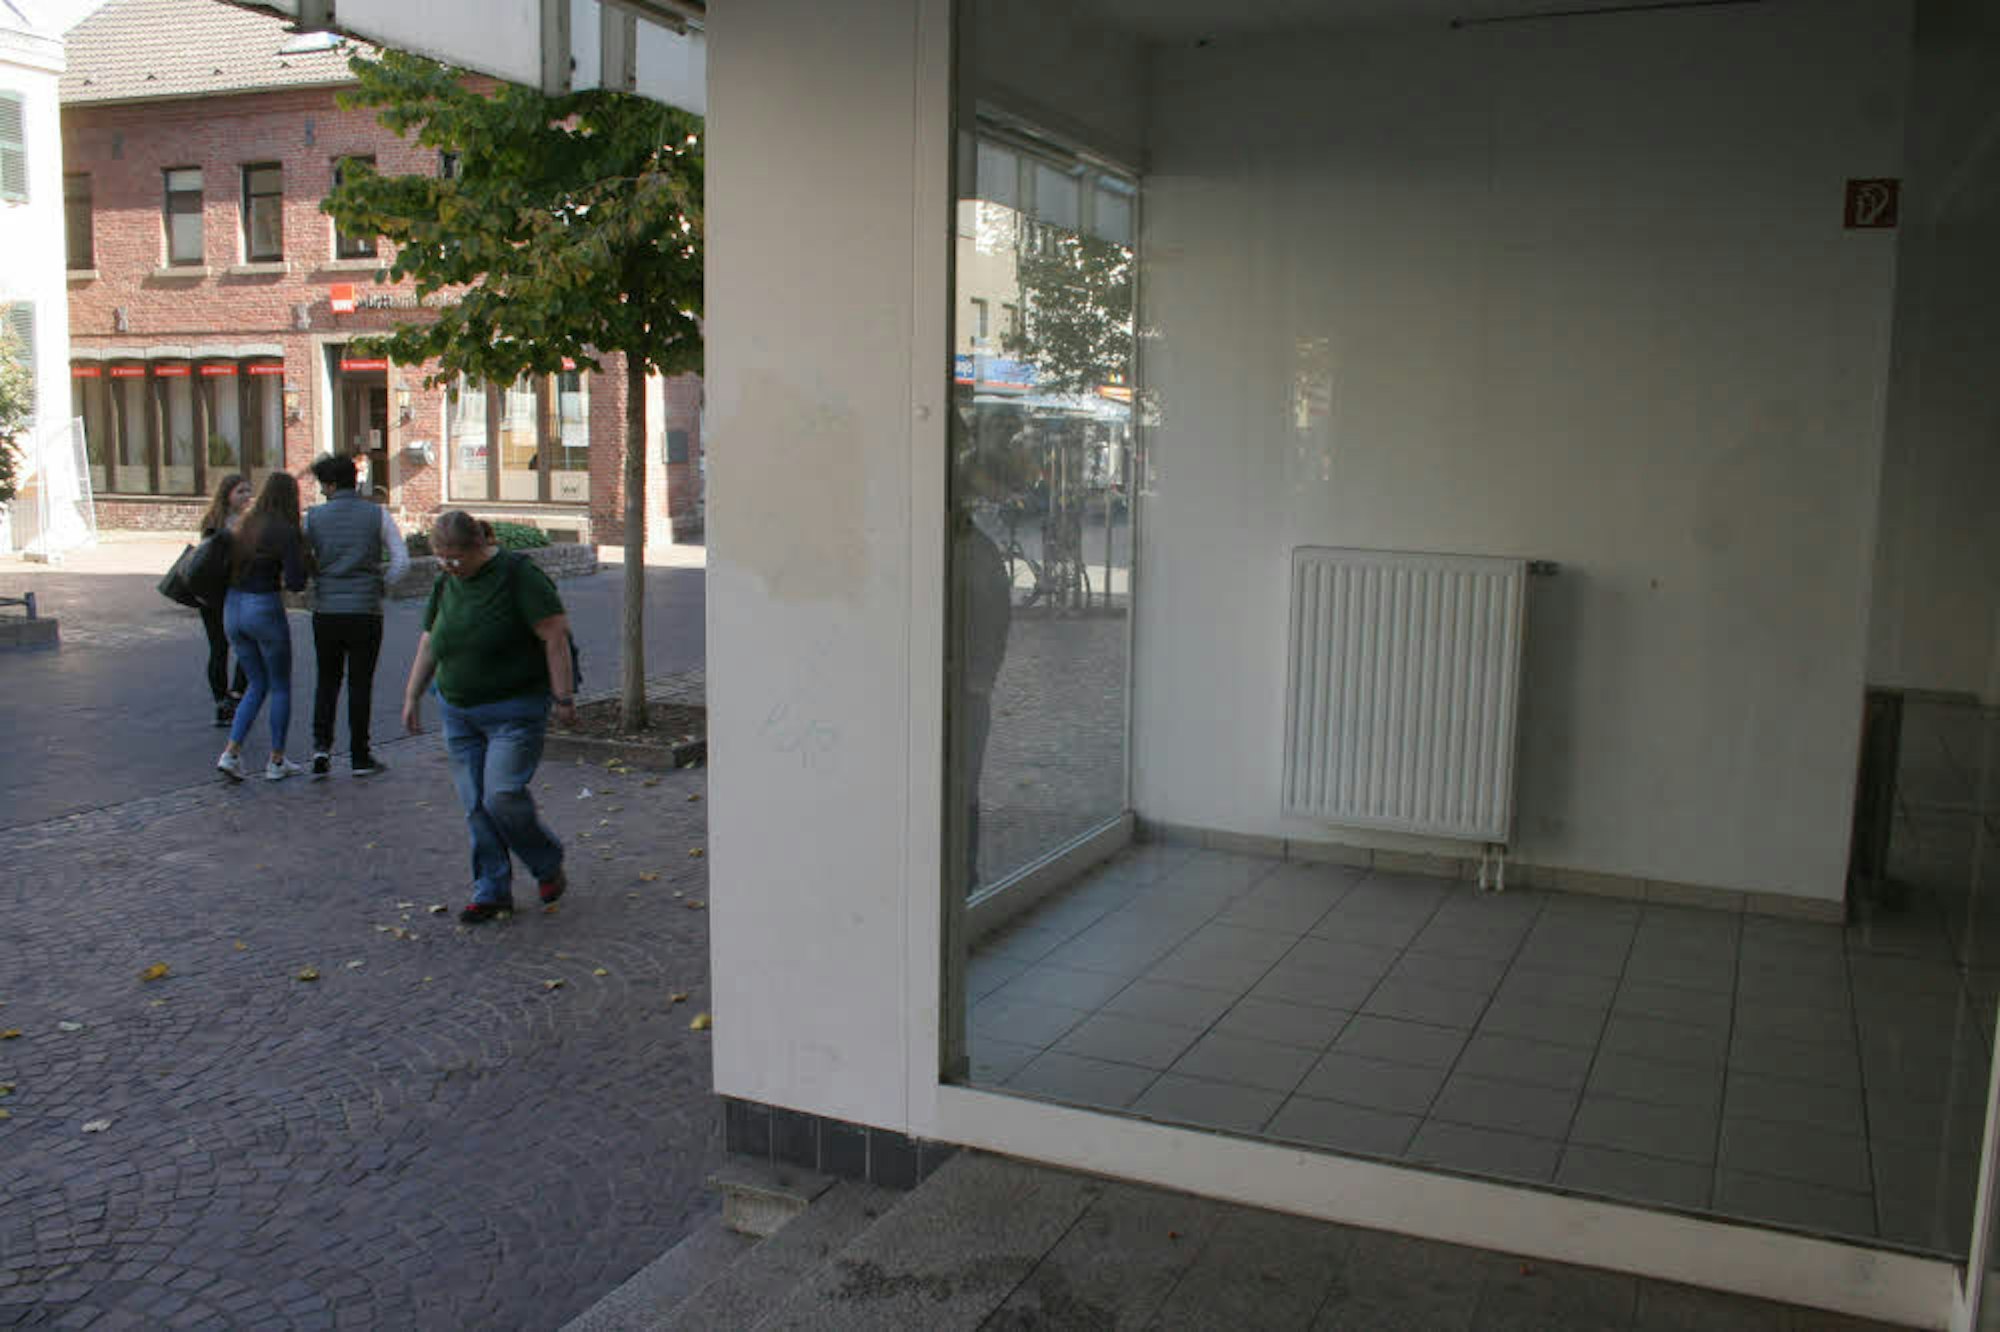 Karge, weiße Wände und verriegelte Türen: Viele Geschäfte in Bergheim geben kein schönes Bild ab.